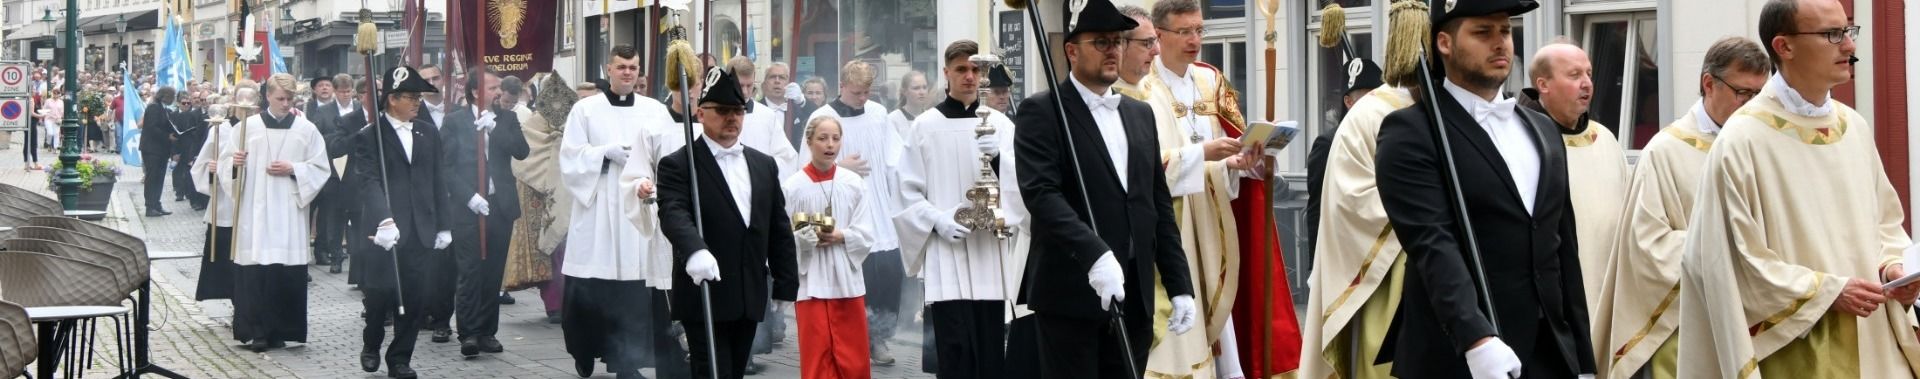 Katholiken feierten Fronleichnam - Prozession durch Fuldaer Innenstadt mit vier Altären - Bischof Gerber predigte im Fuldaer Dom